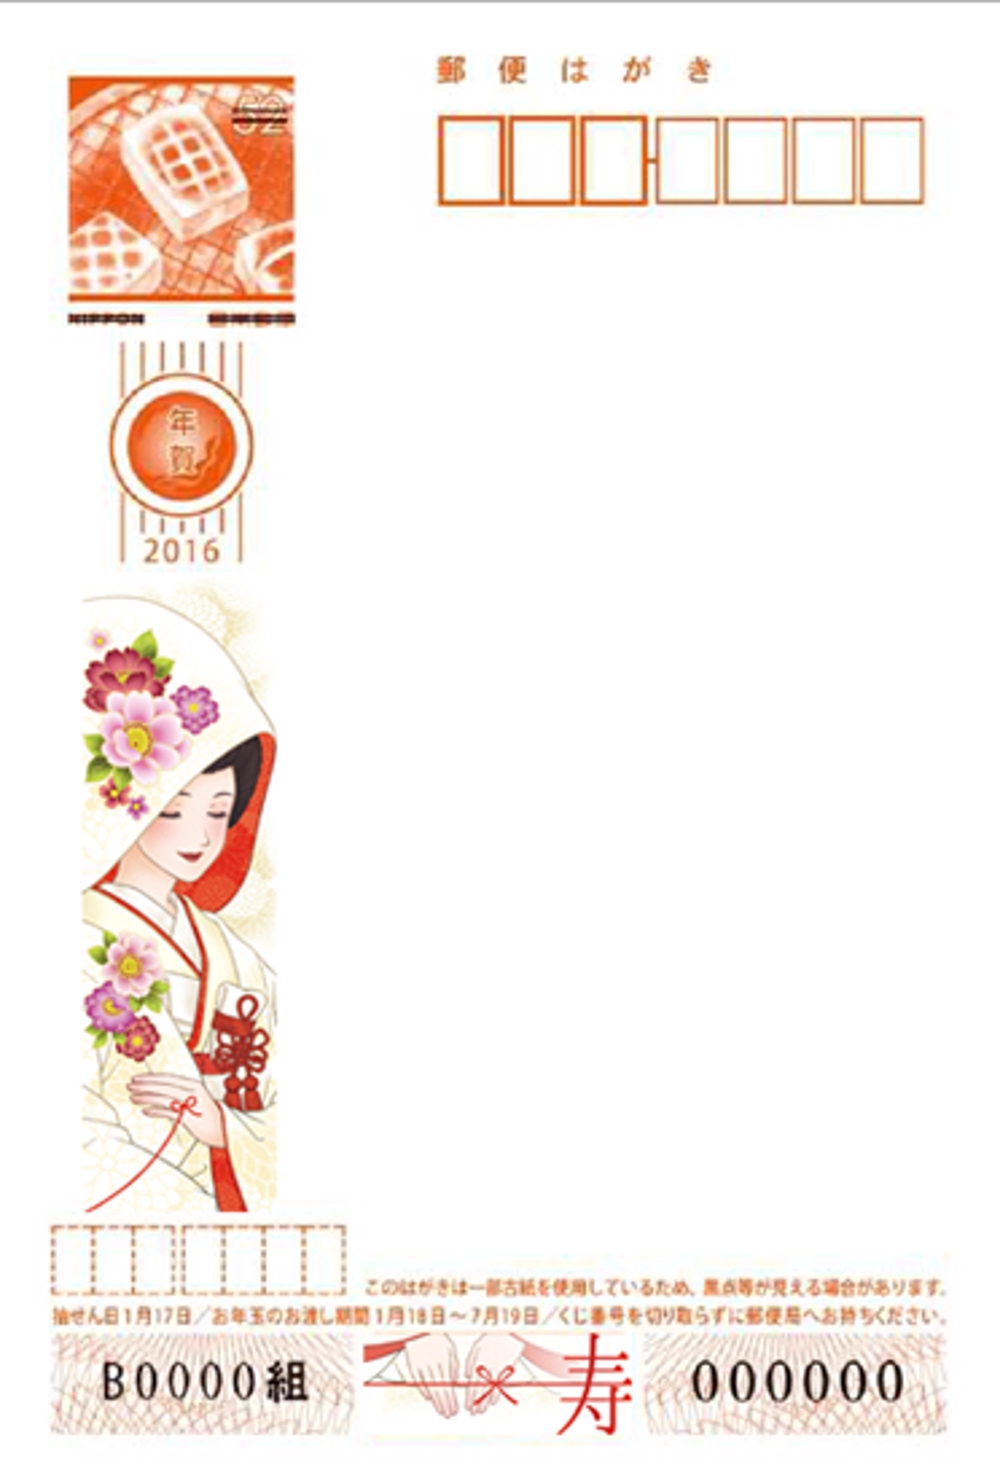 名称）花嫁年賀のイラスト　年賀状の切手面に印刷するイラスト等のデザイン